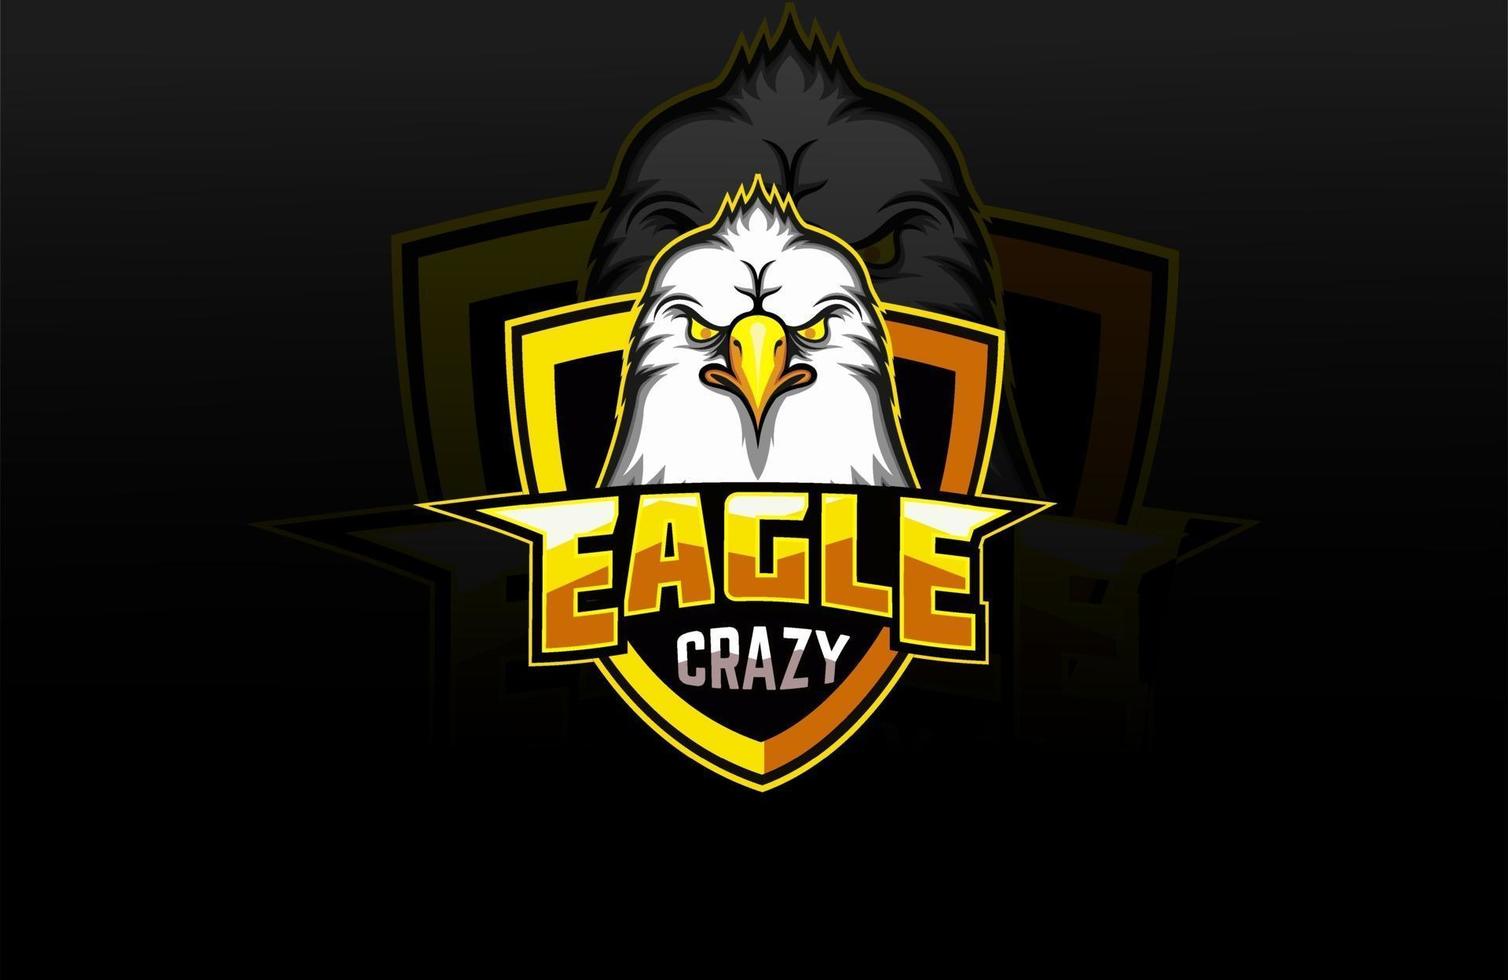 crazy eagle e-sports team mascot logo vector